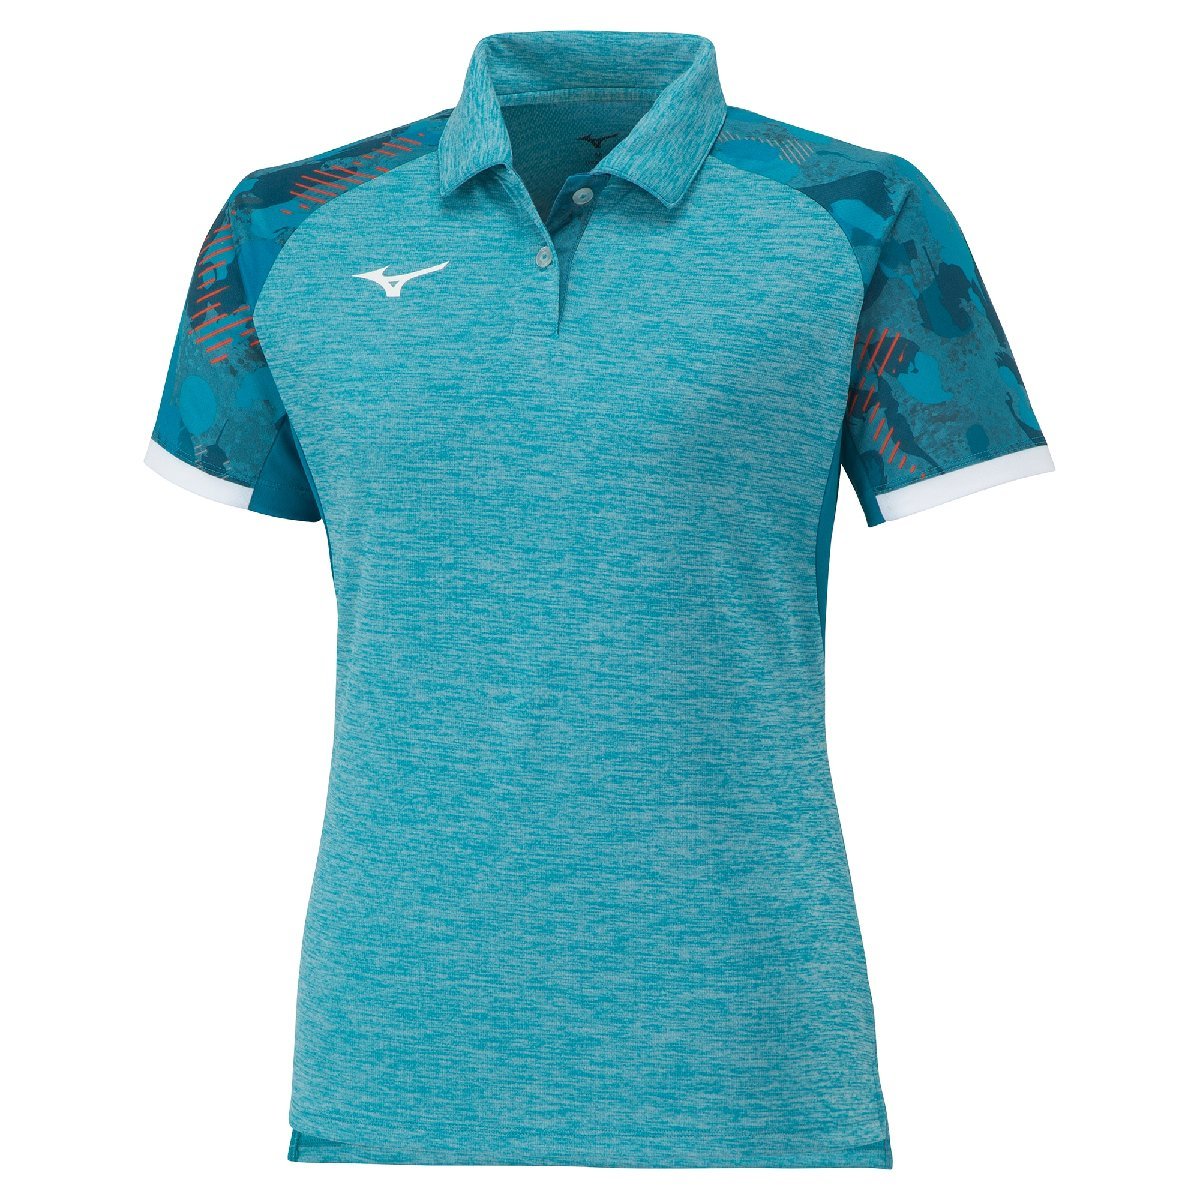 wi мужской L размер Mizuno настольный теннис рубашка 82JAA21023 эмаль голубой 